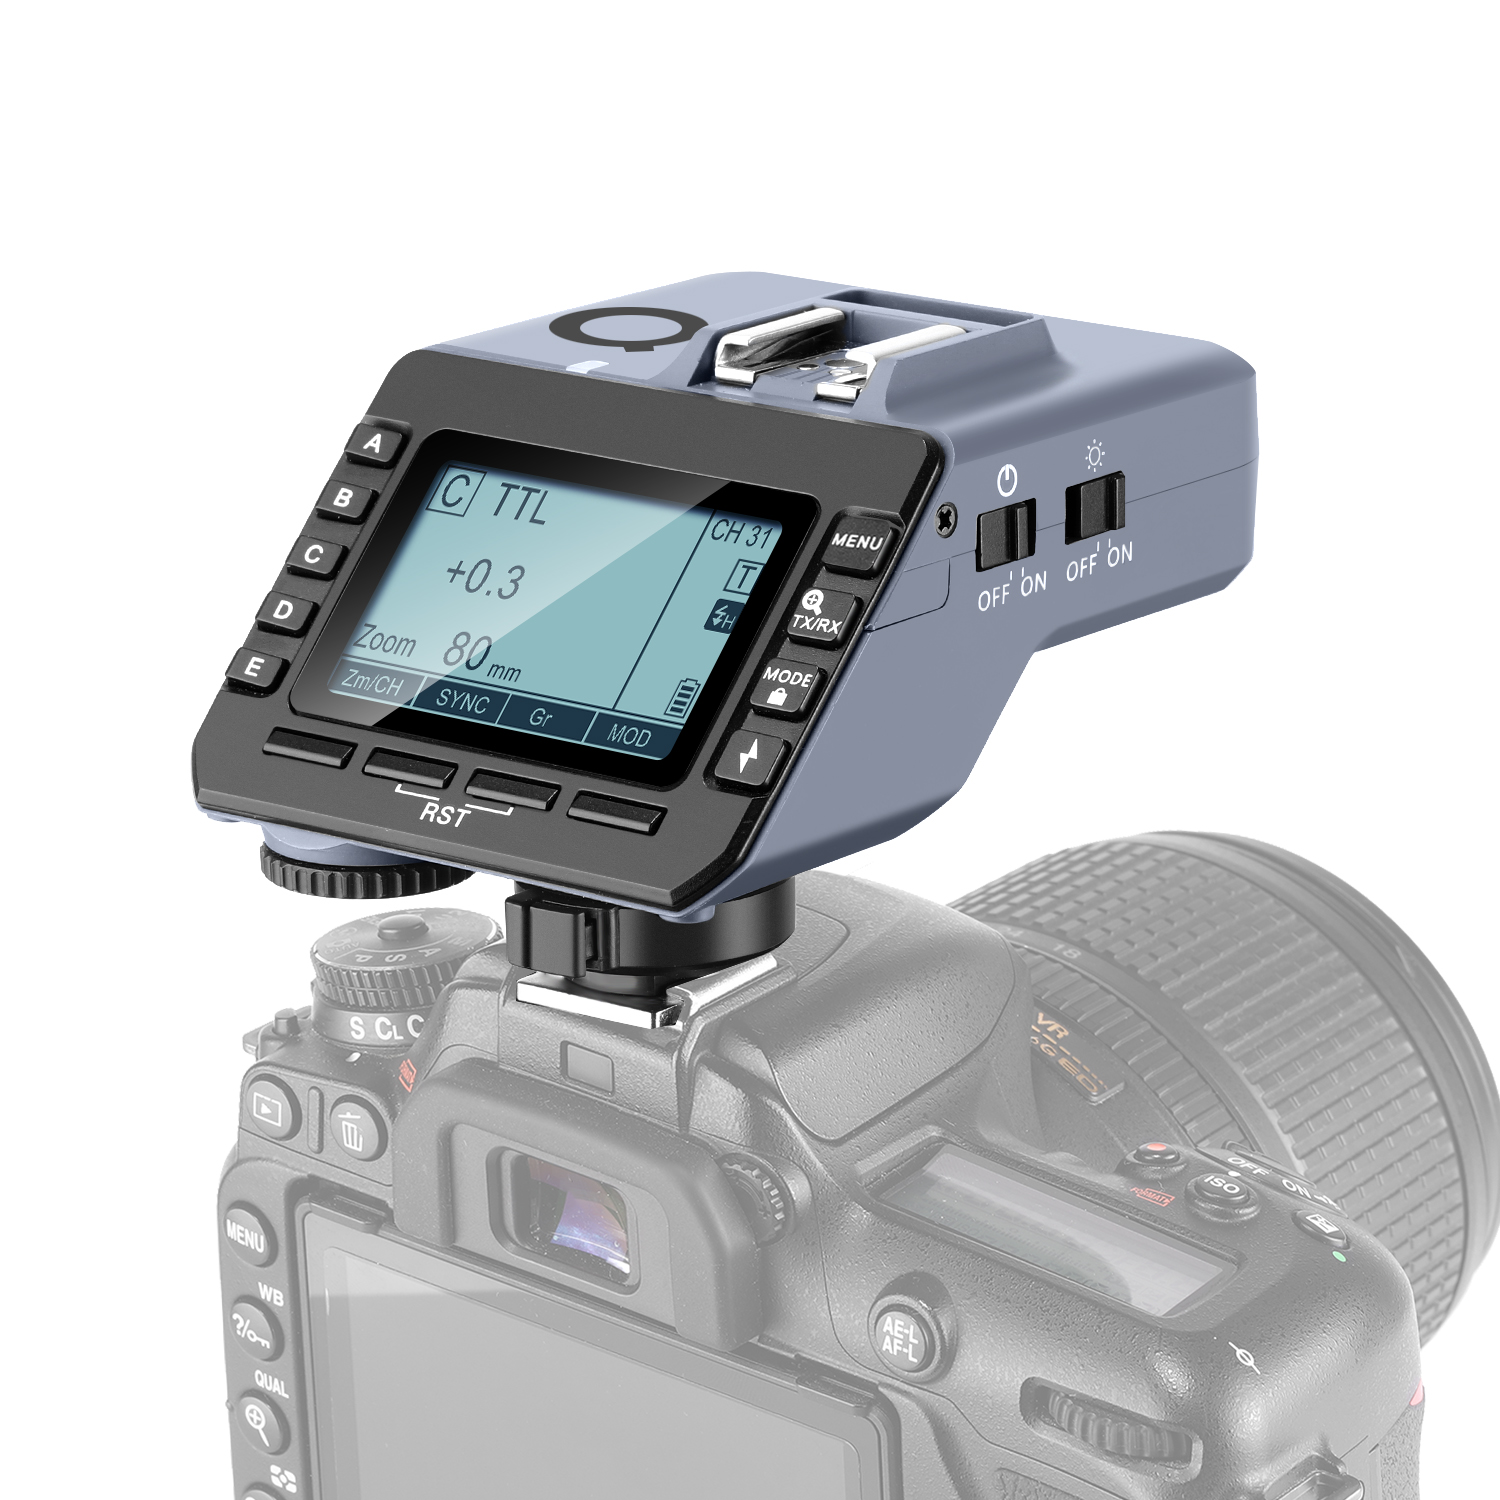 nikon camera control pro 2 compatibility